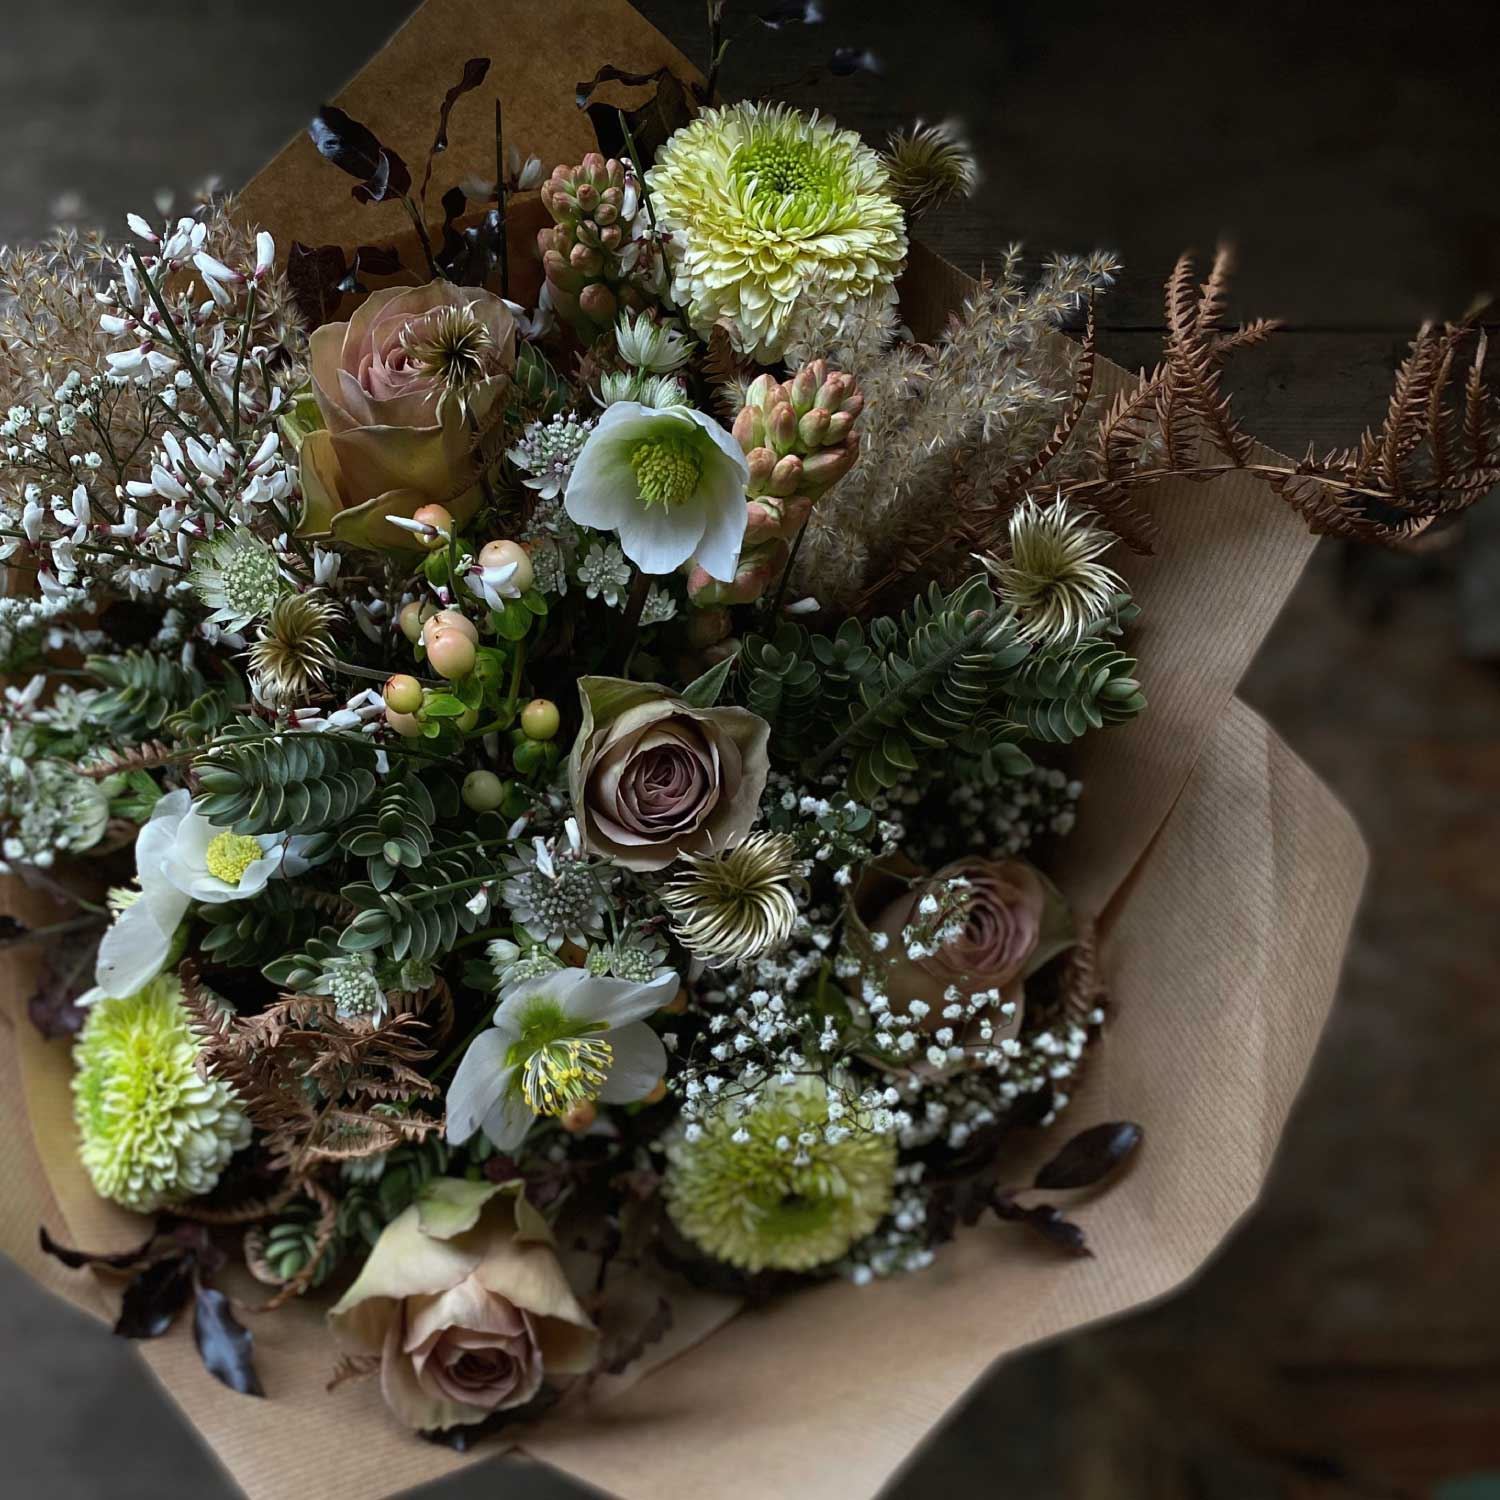 Winter Flower Arrangements & Bouquets